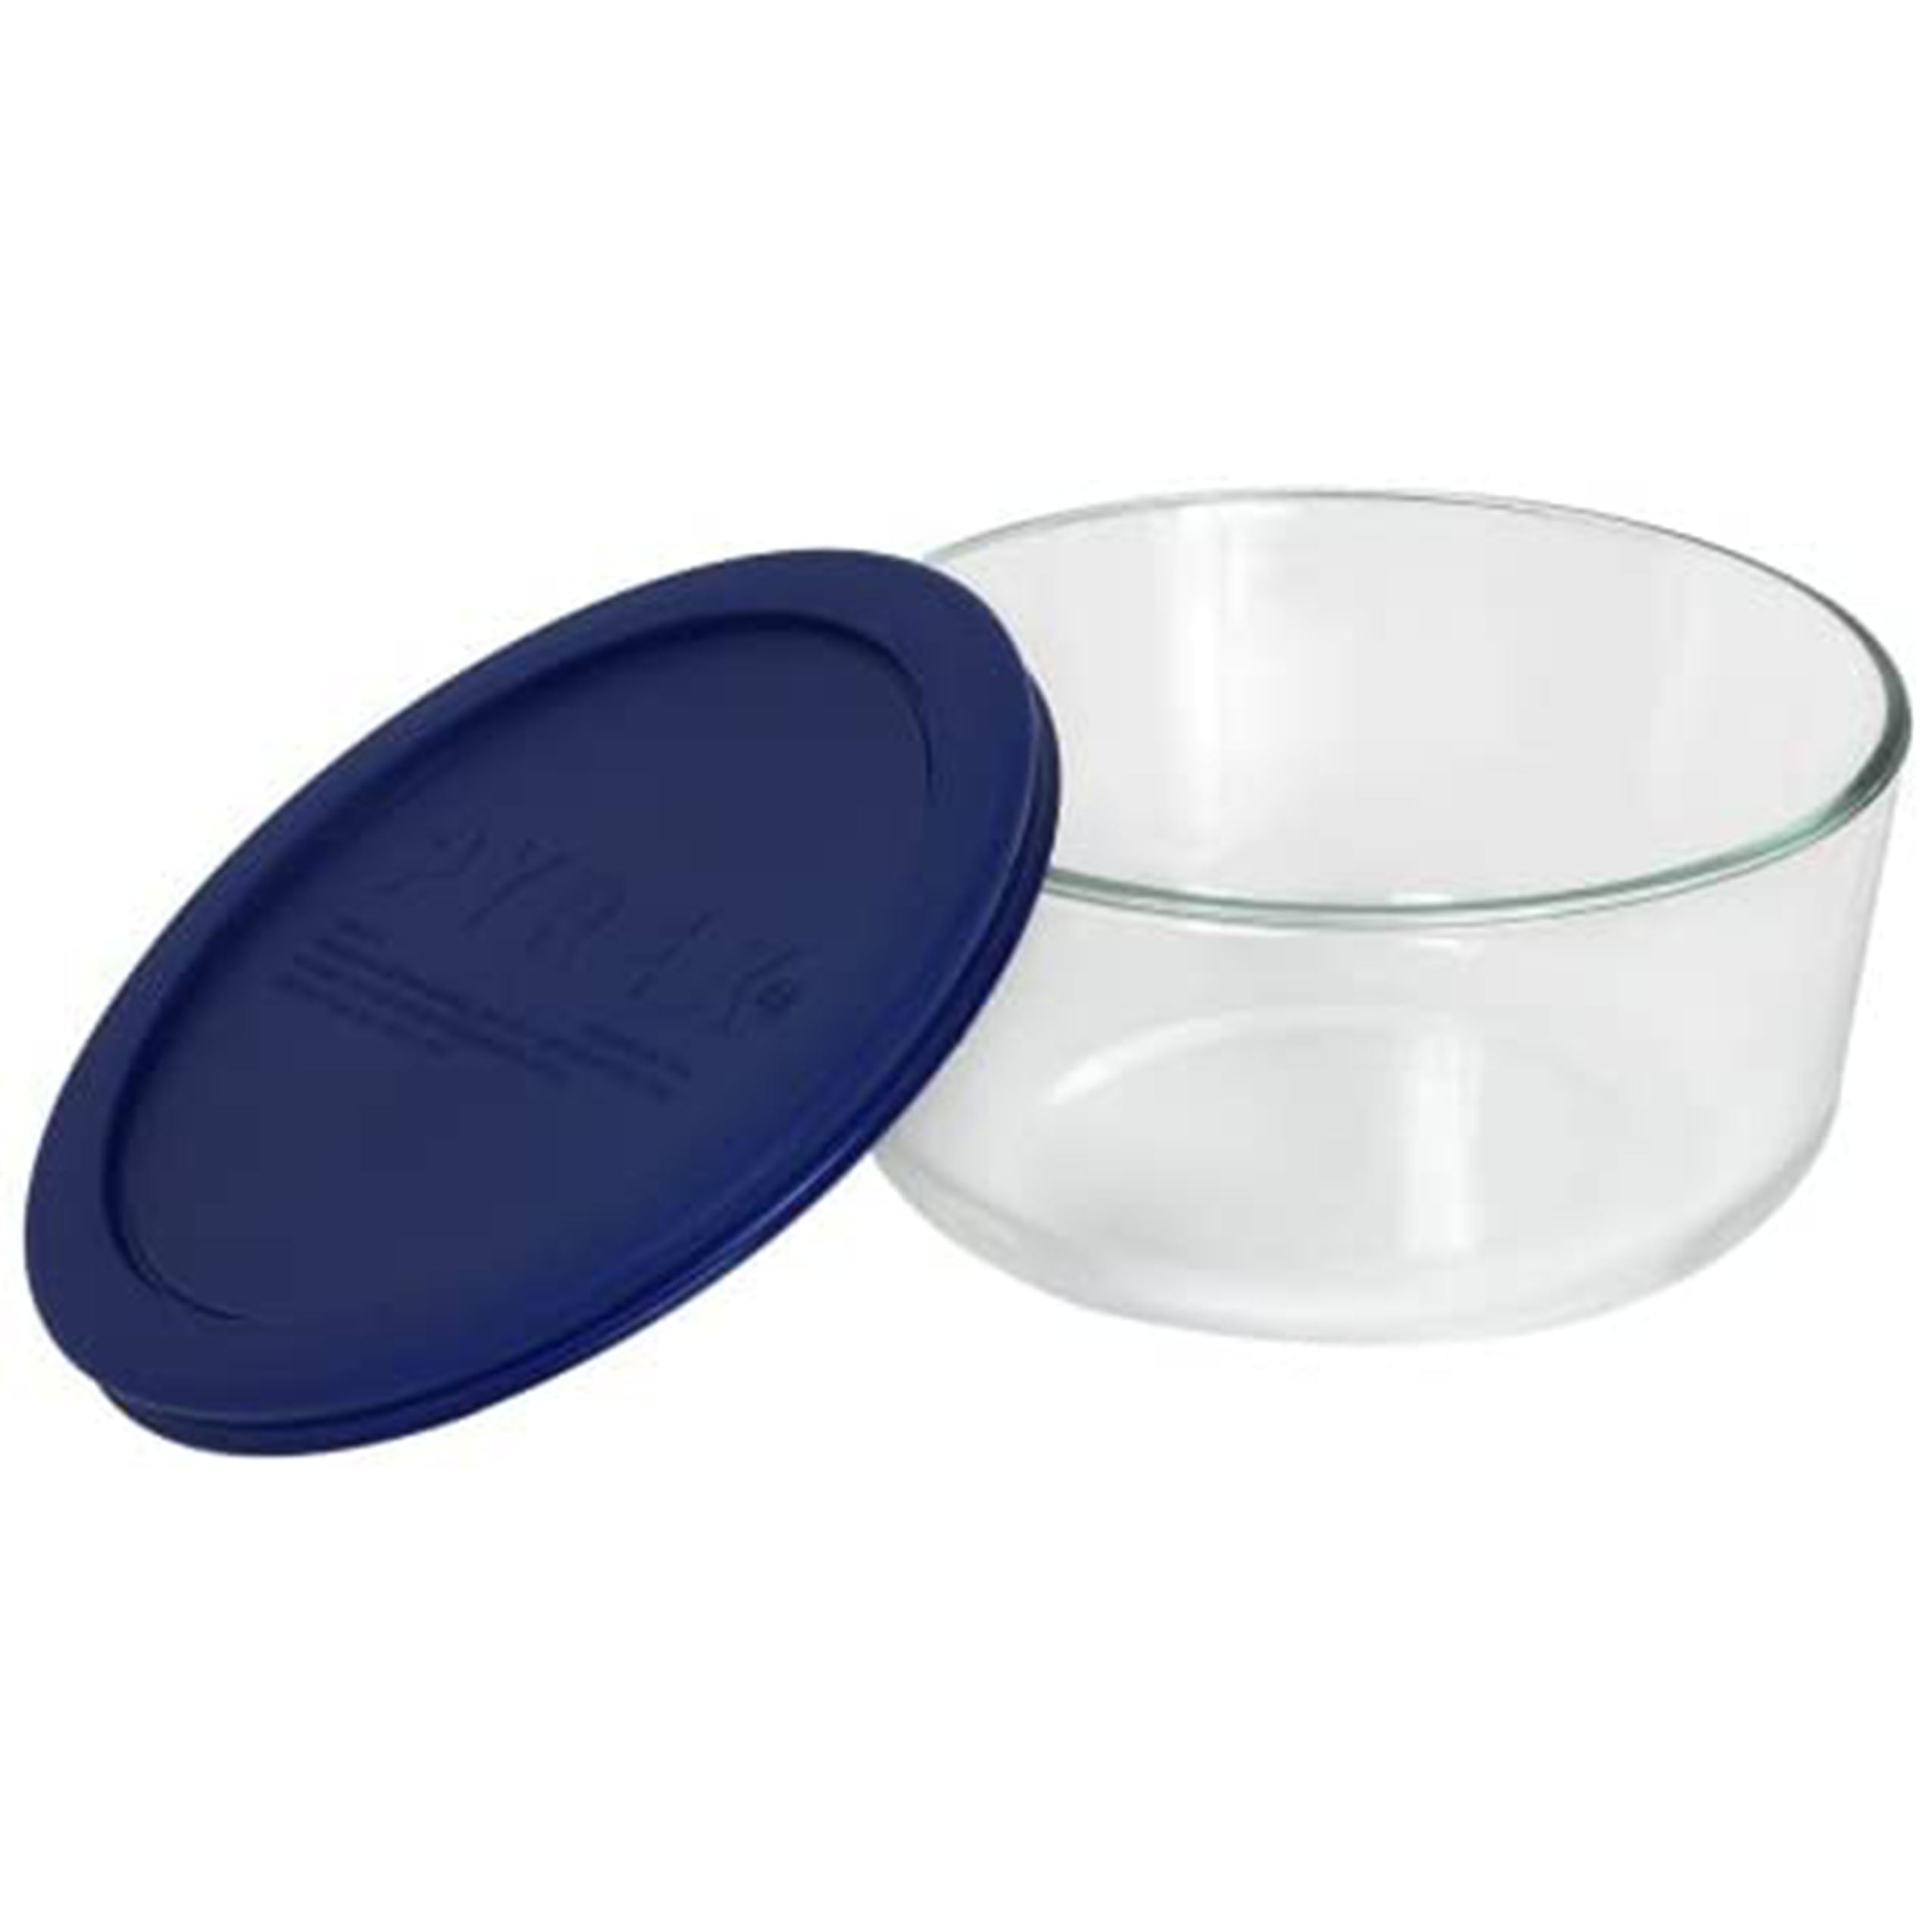 Pyrex 7200A Glass Storage Bowls w 7202PC Lids PURPLE 3.75” Dia x 2” H Set  of 3